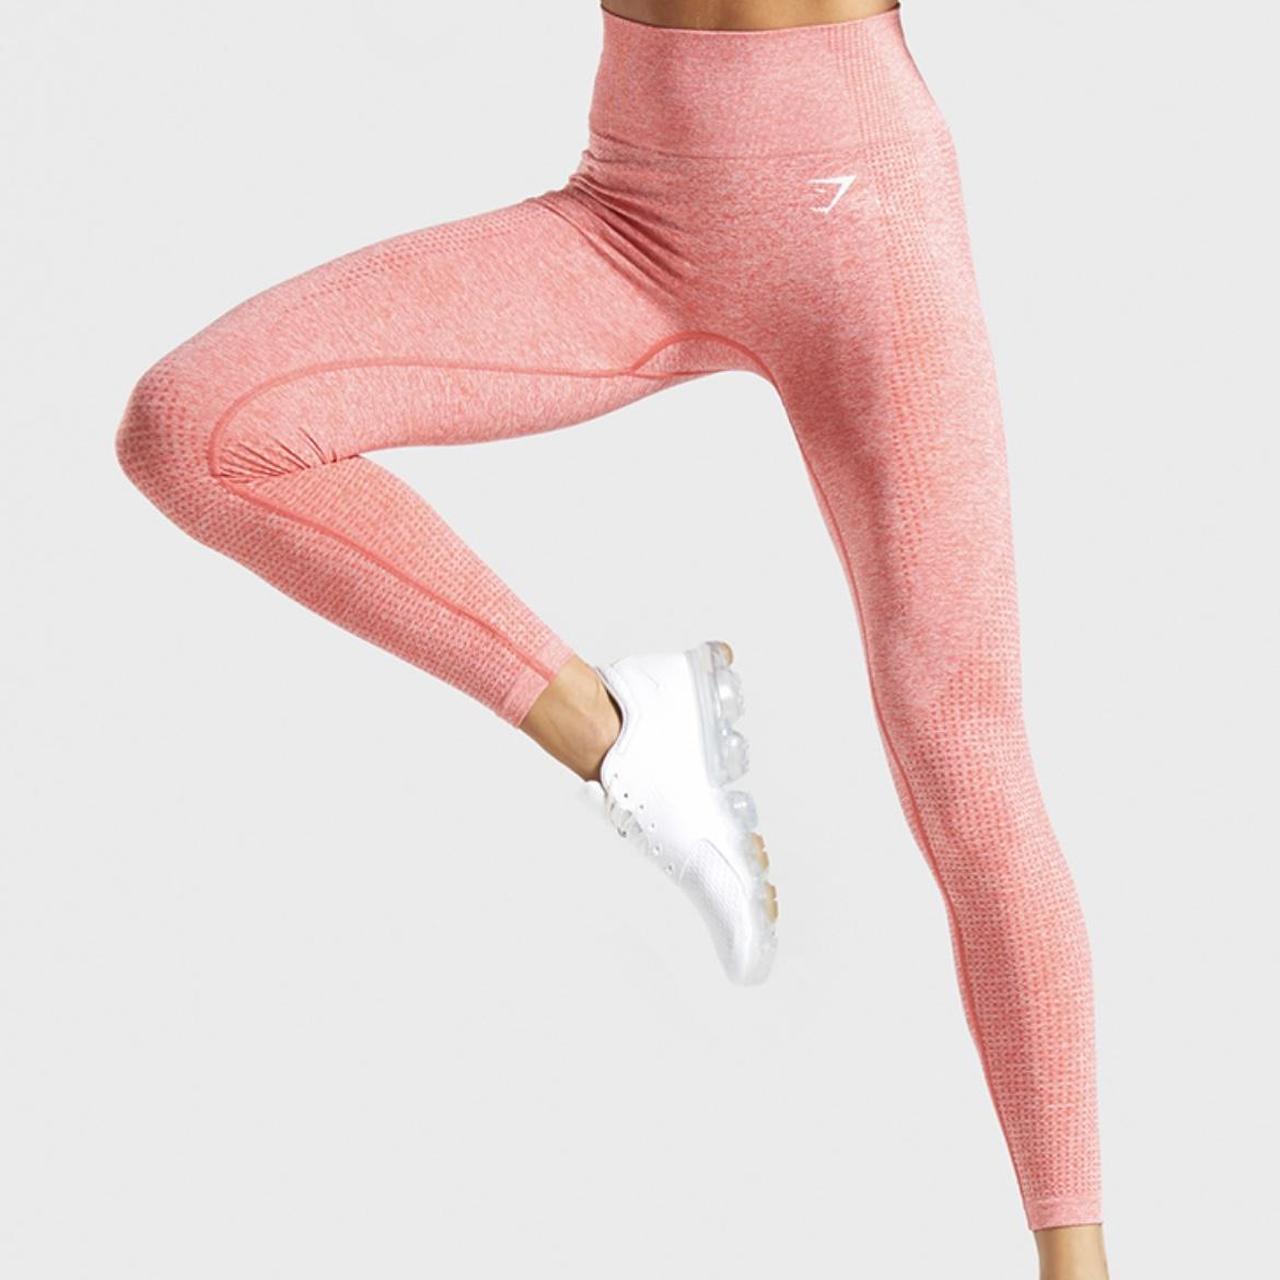 Gymshark vital seamless leggings in pink marl. - Depop